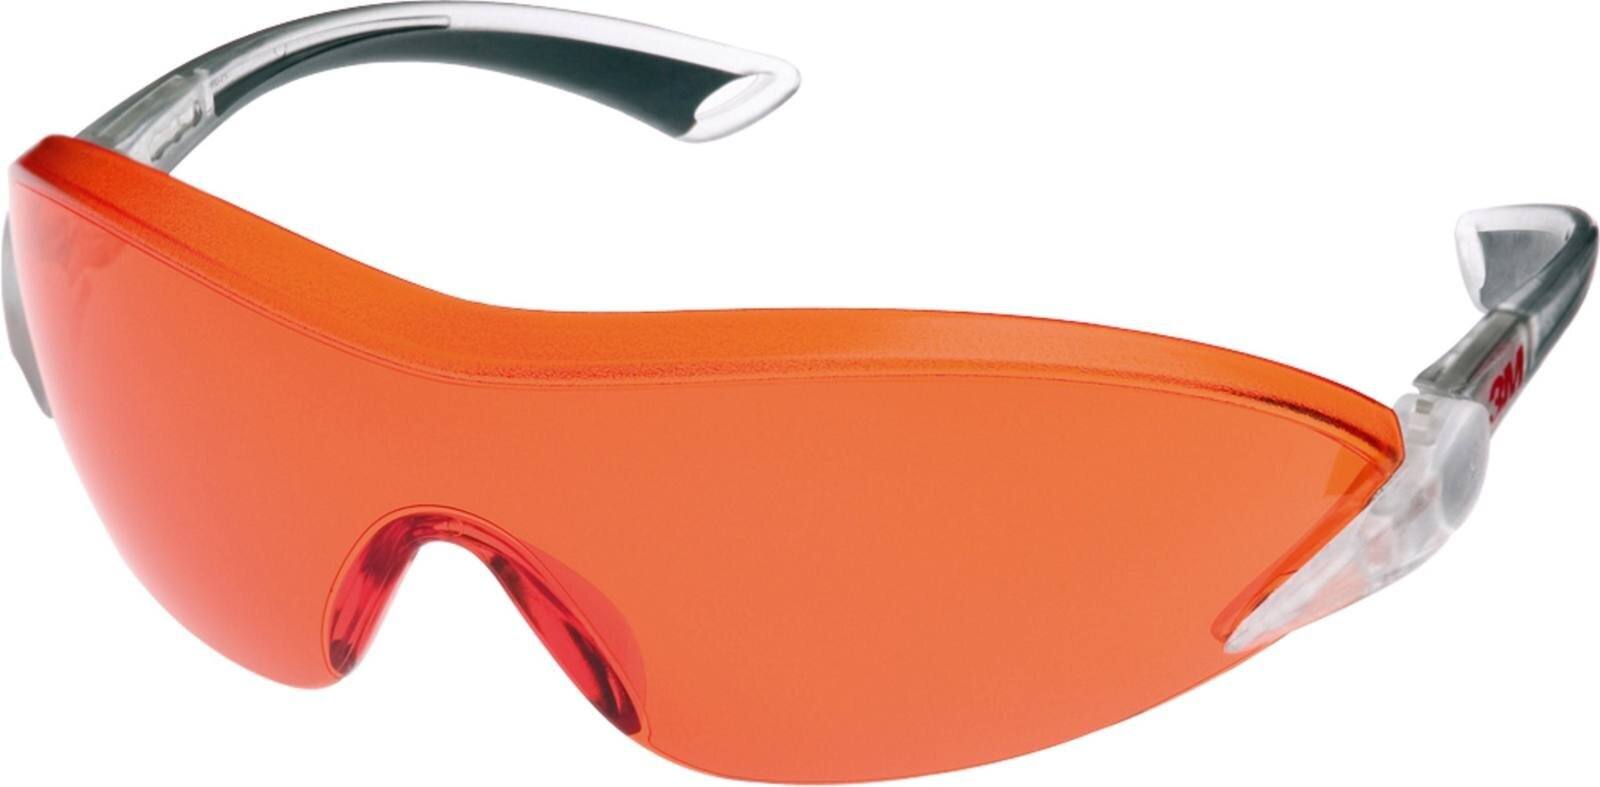 3M 2846 Schutzbrille AS/AF/UV, PC, orange getönt, einstellbare Bügellänge und -neigung,softe Bügelenden, Medizinbereich